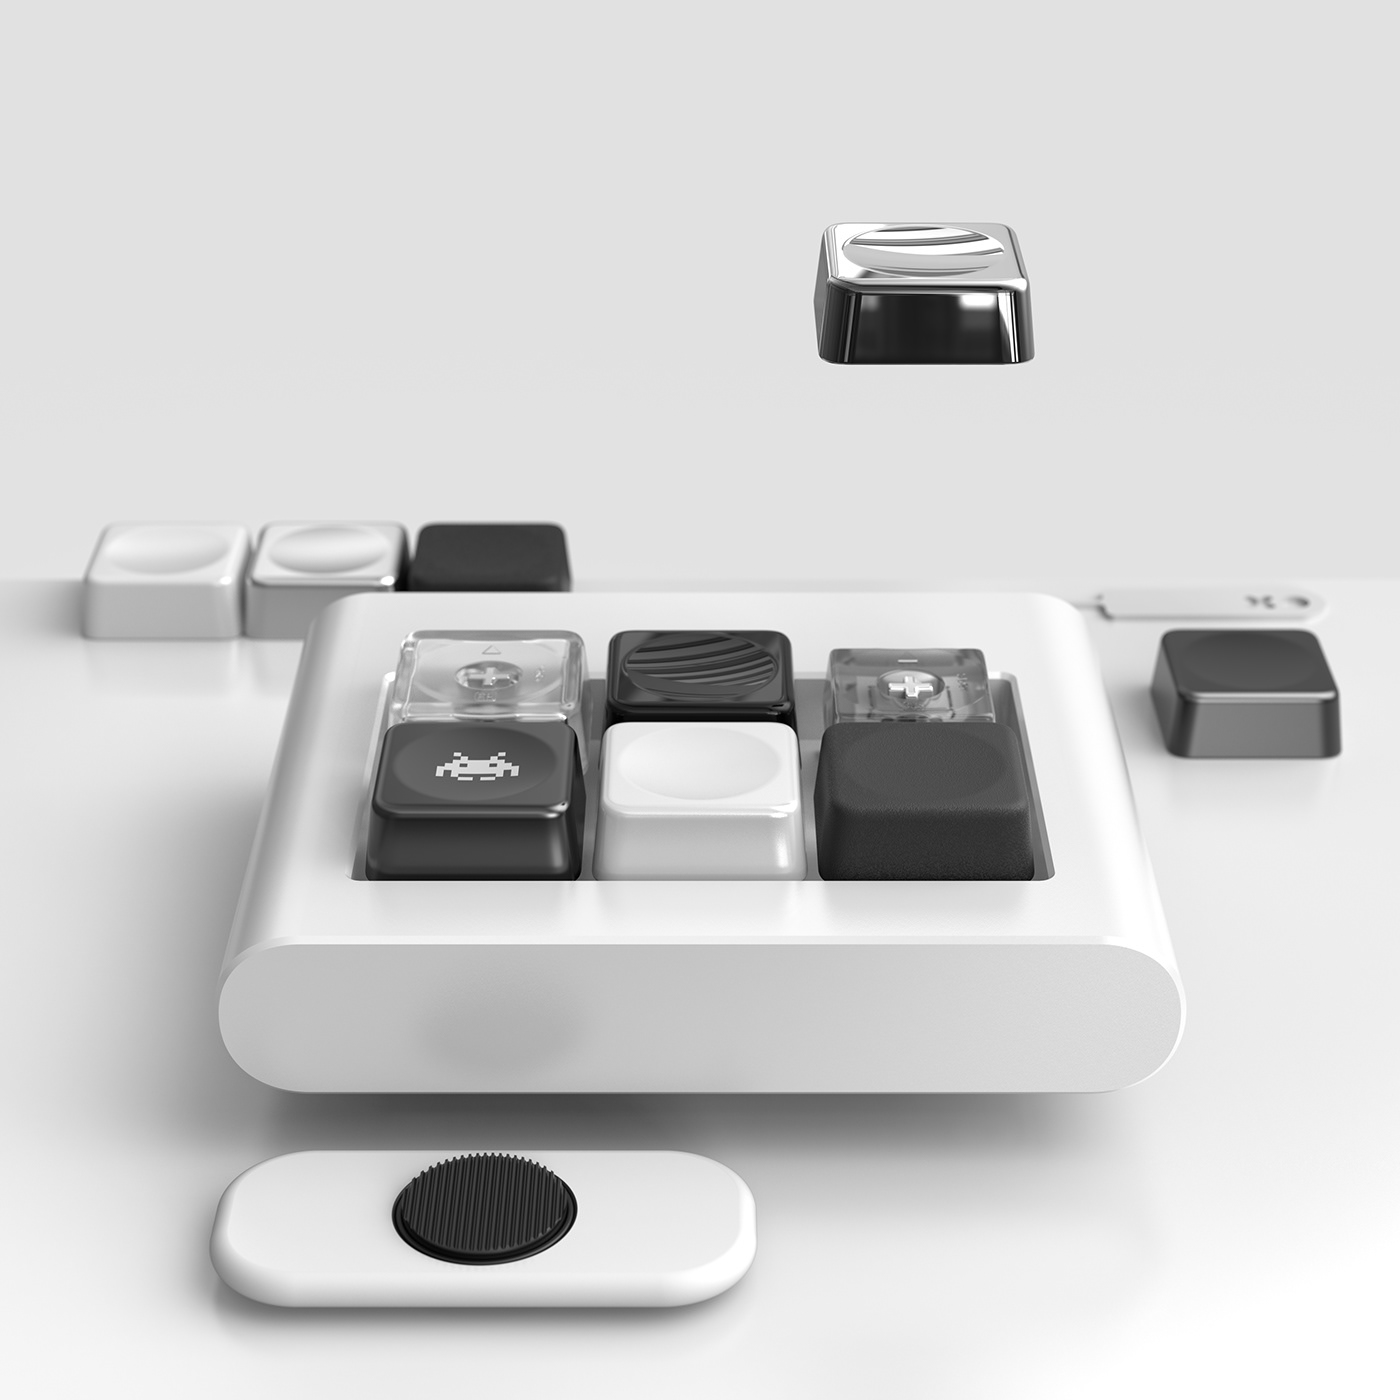 productdesign design redesign industrial design  digitalrender Render concept Spinner Keypad ramaworks